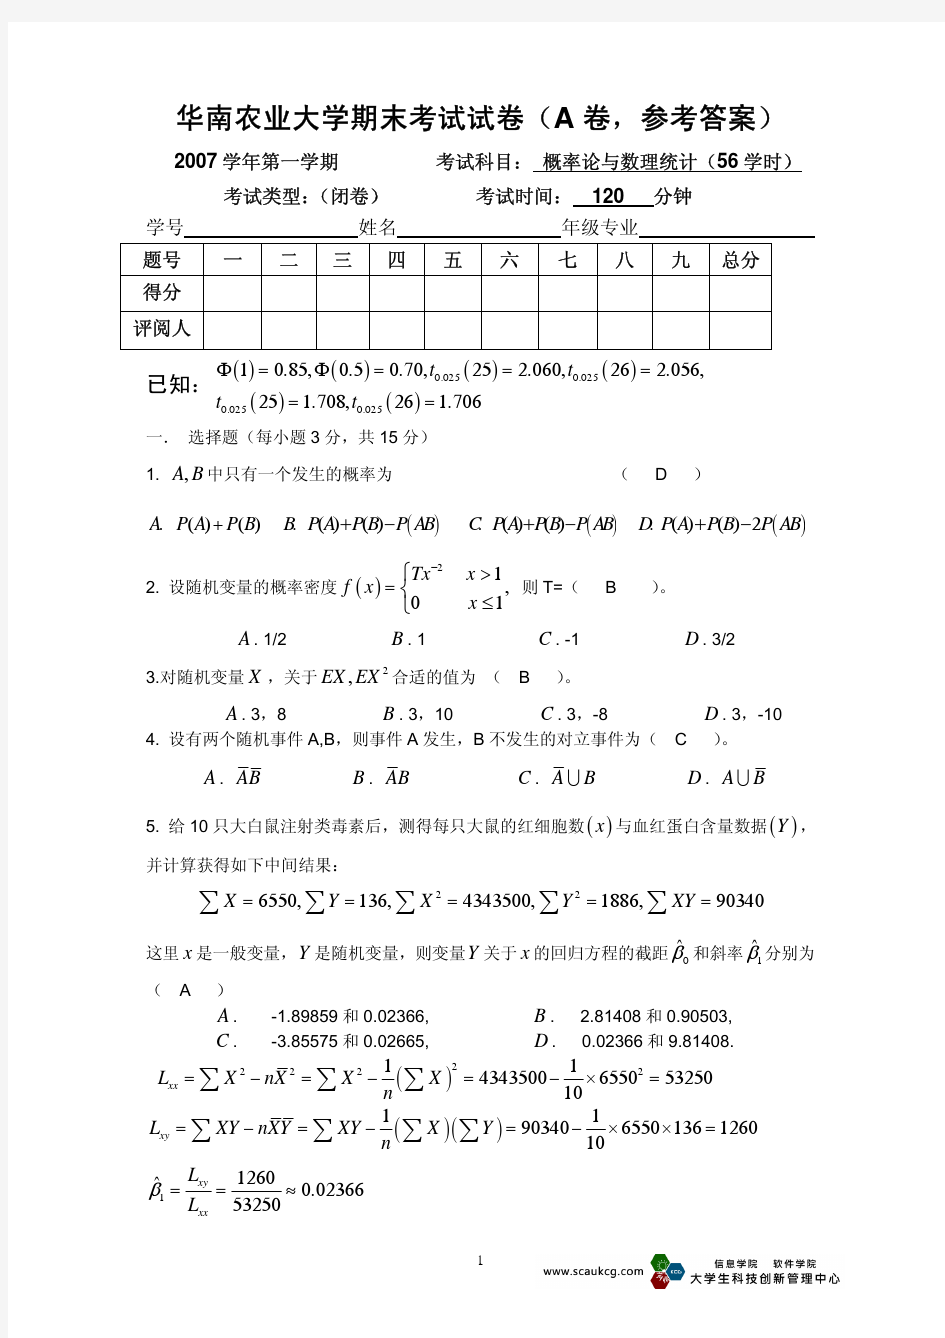 华南农业大学 概率论与数理统计2007学年试卷及答案